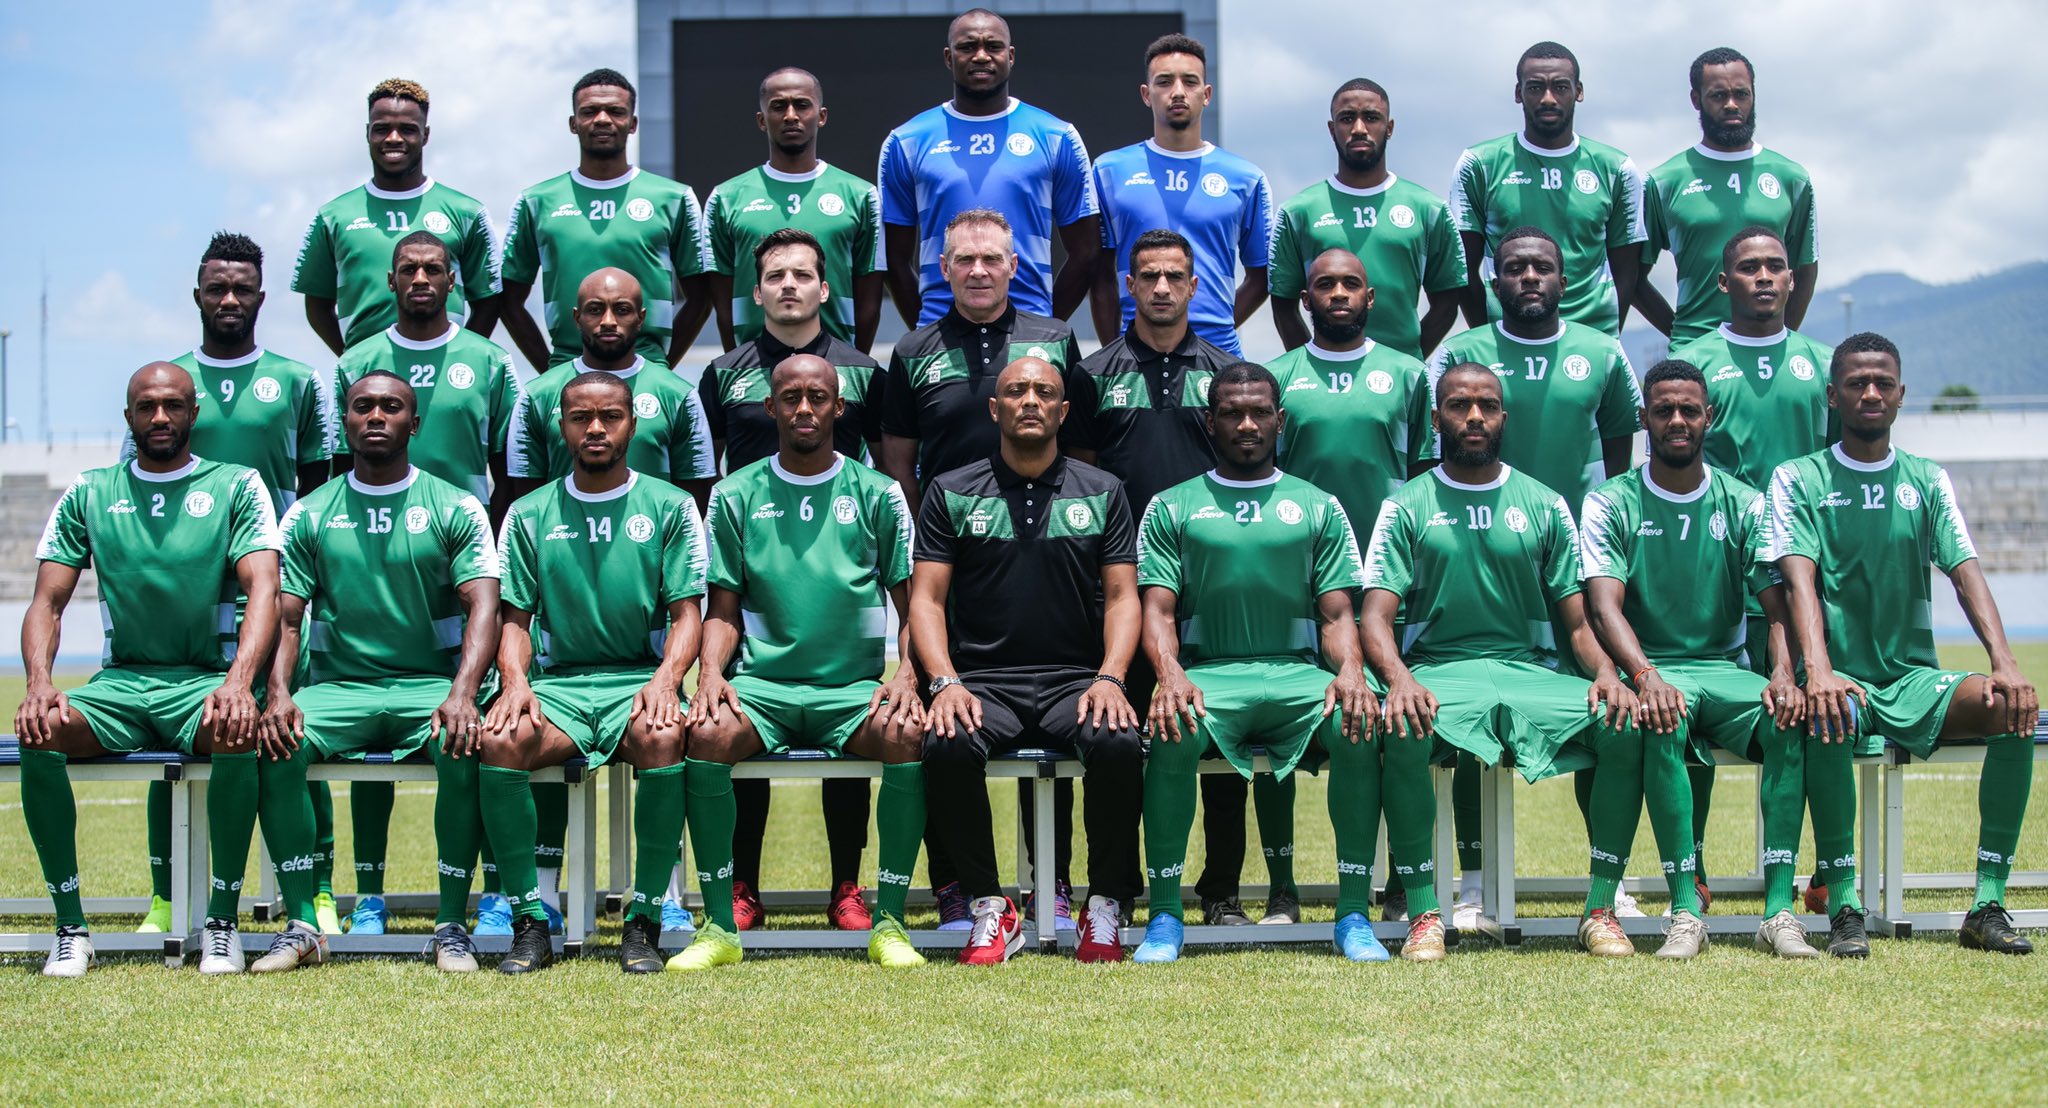 Cœlacanthes, Equipe Nationale – Communiqué : « Les Cœlacanthes en colère », Comoros Football 269 | Portail du football des Comores